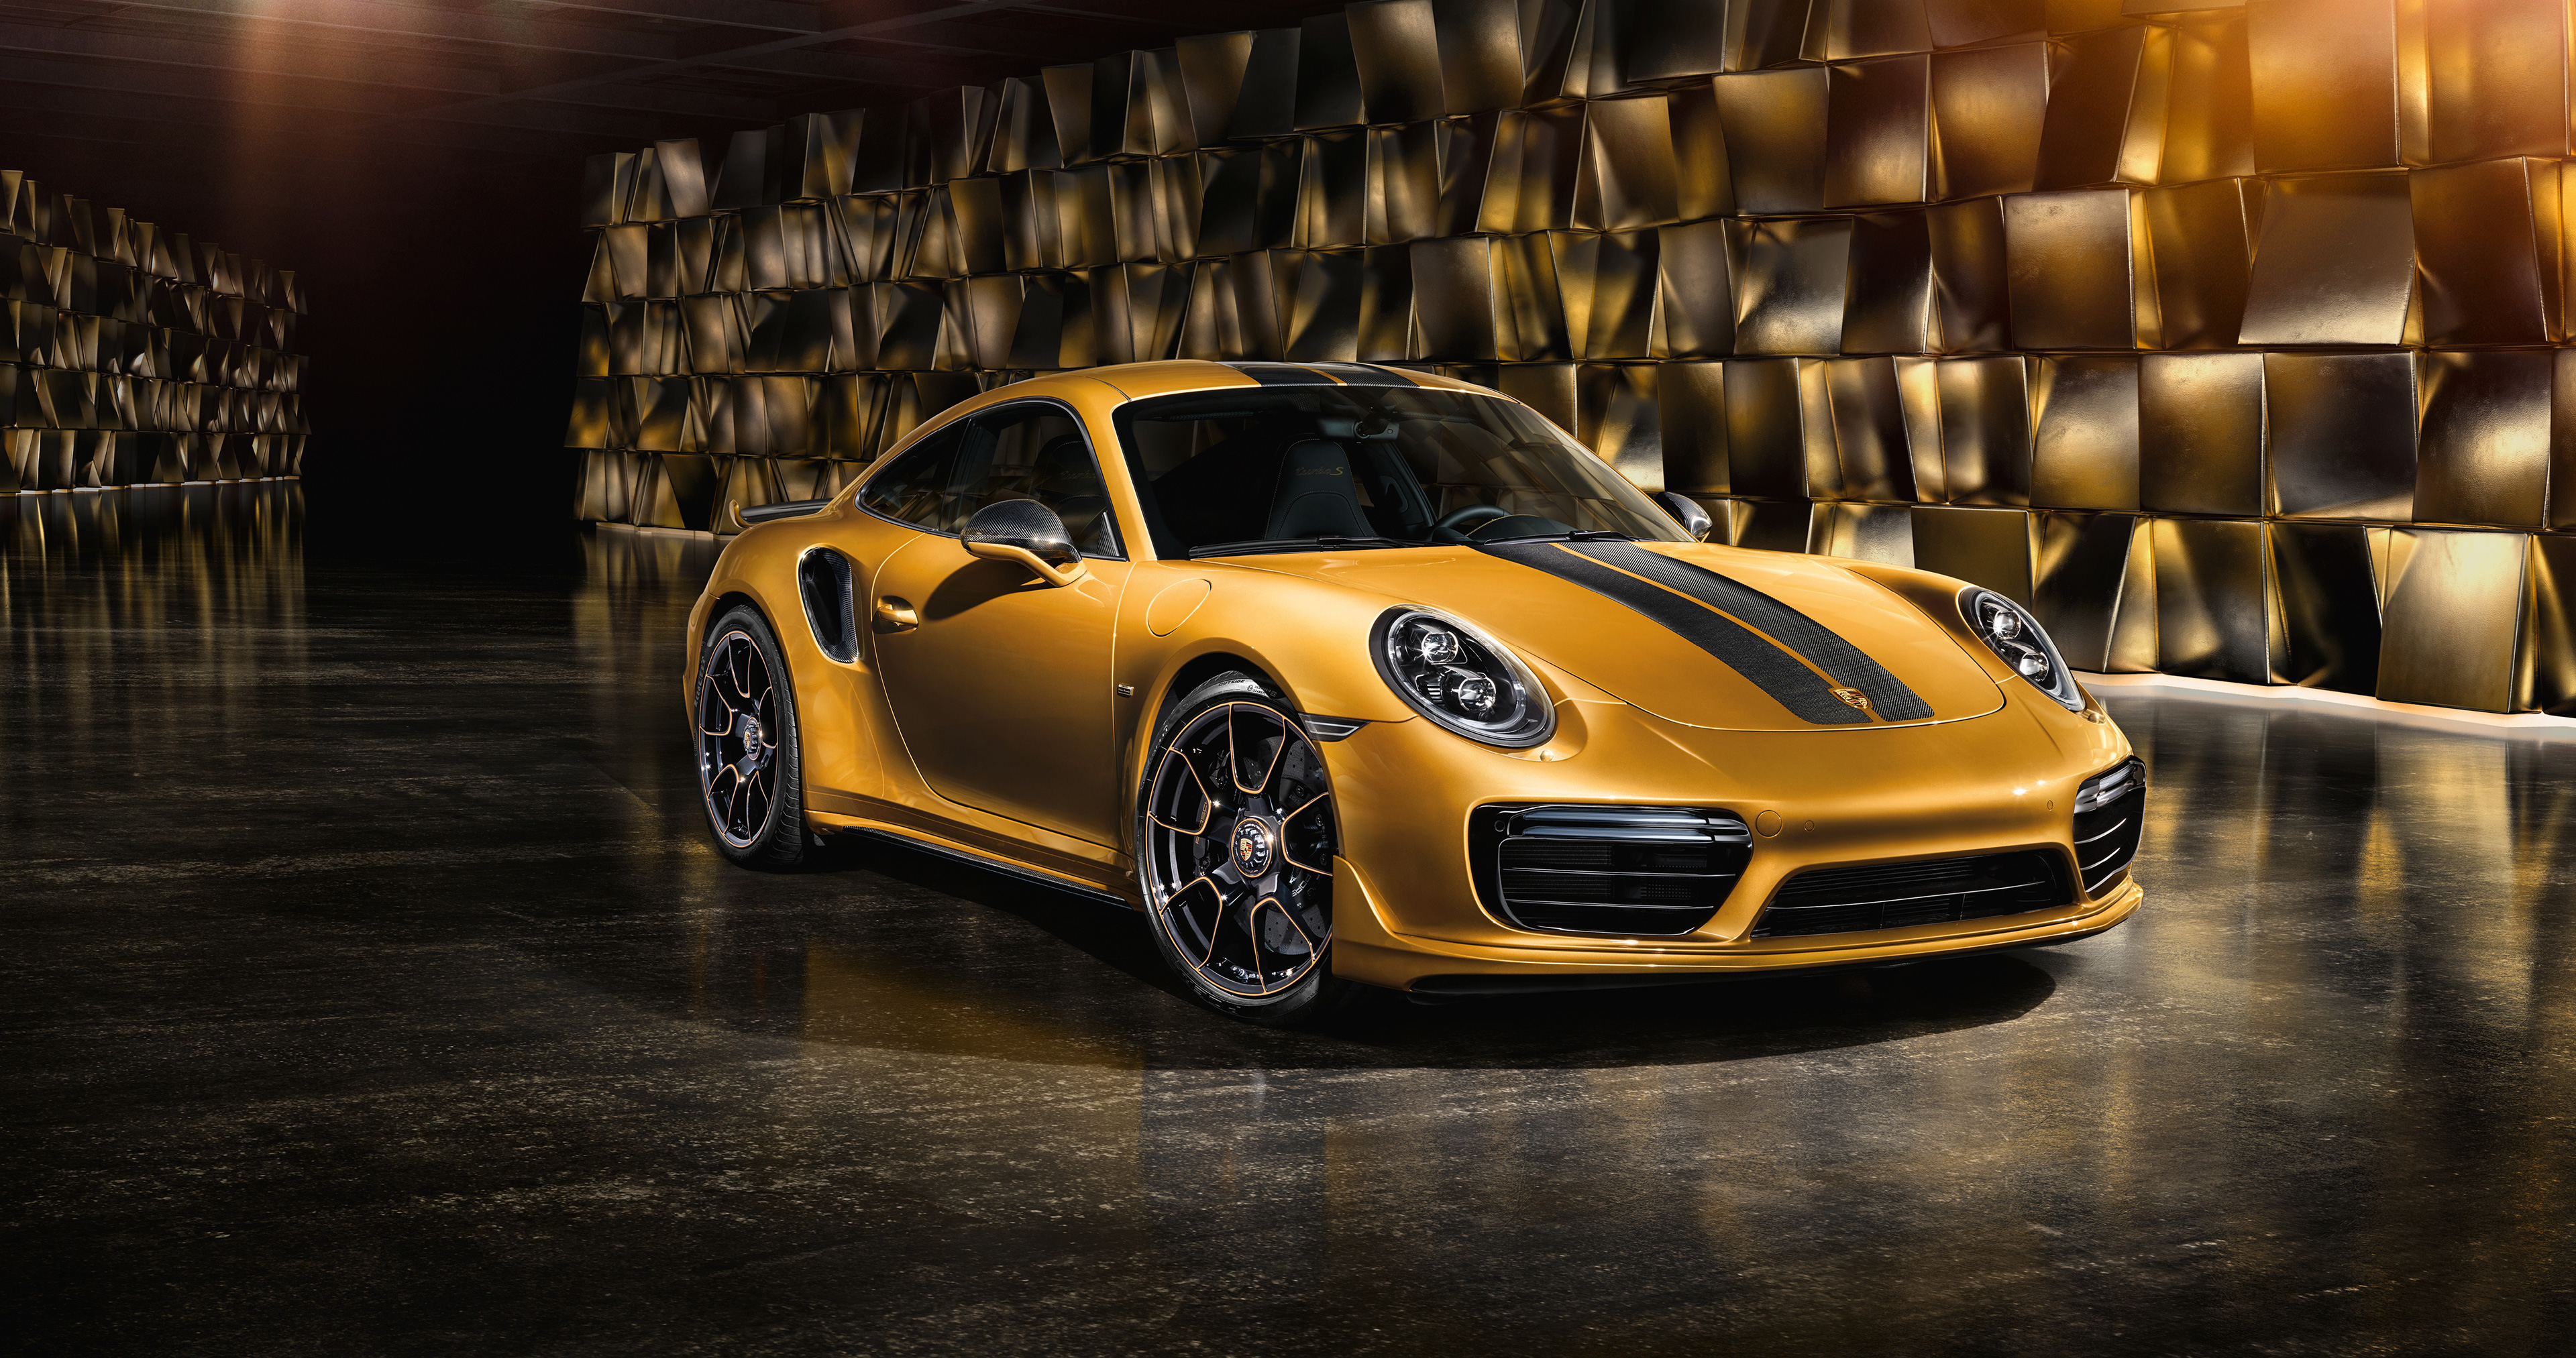 Обои Porsche 911 Porsche золотой на рабочий стол